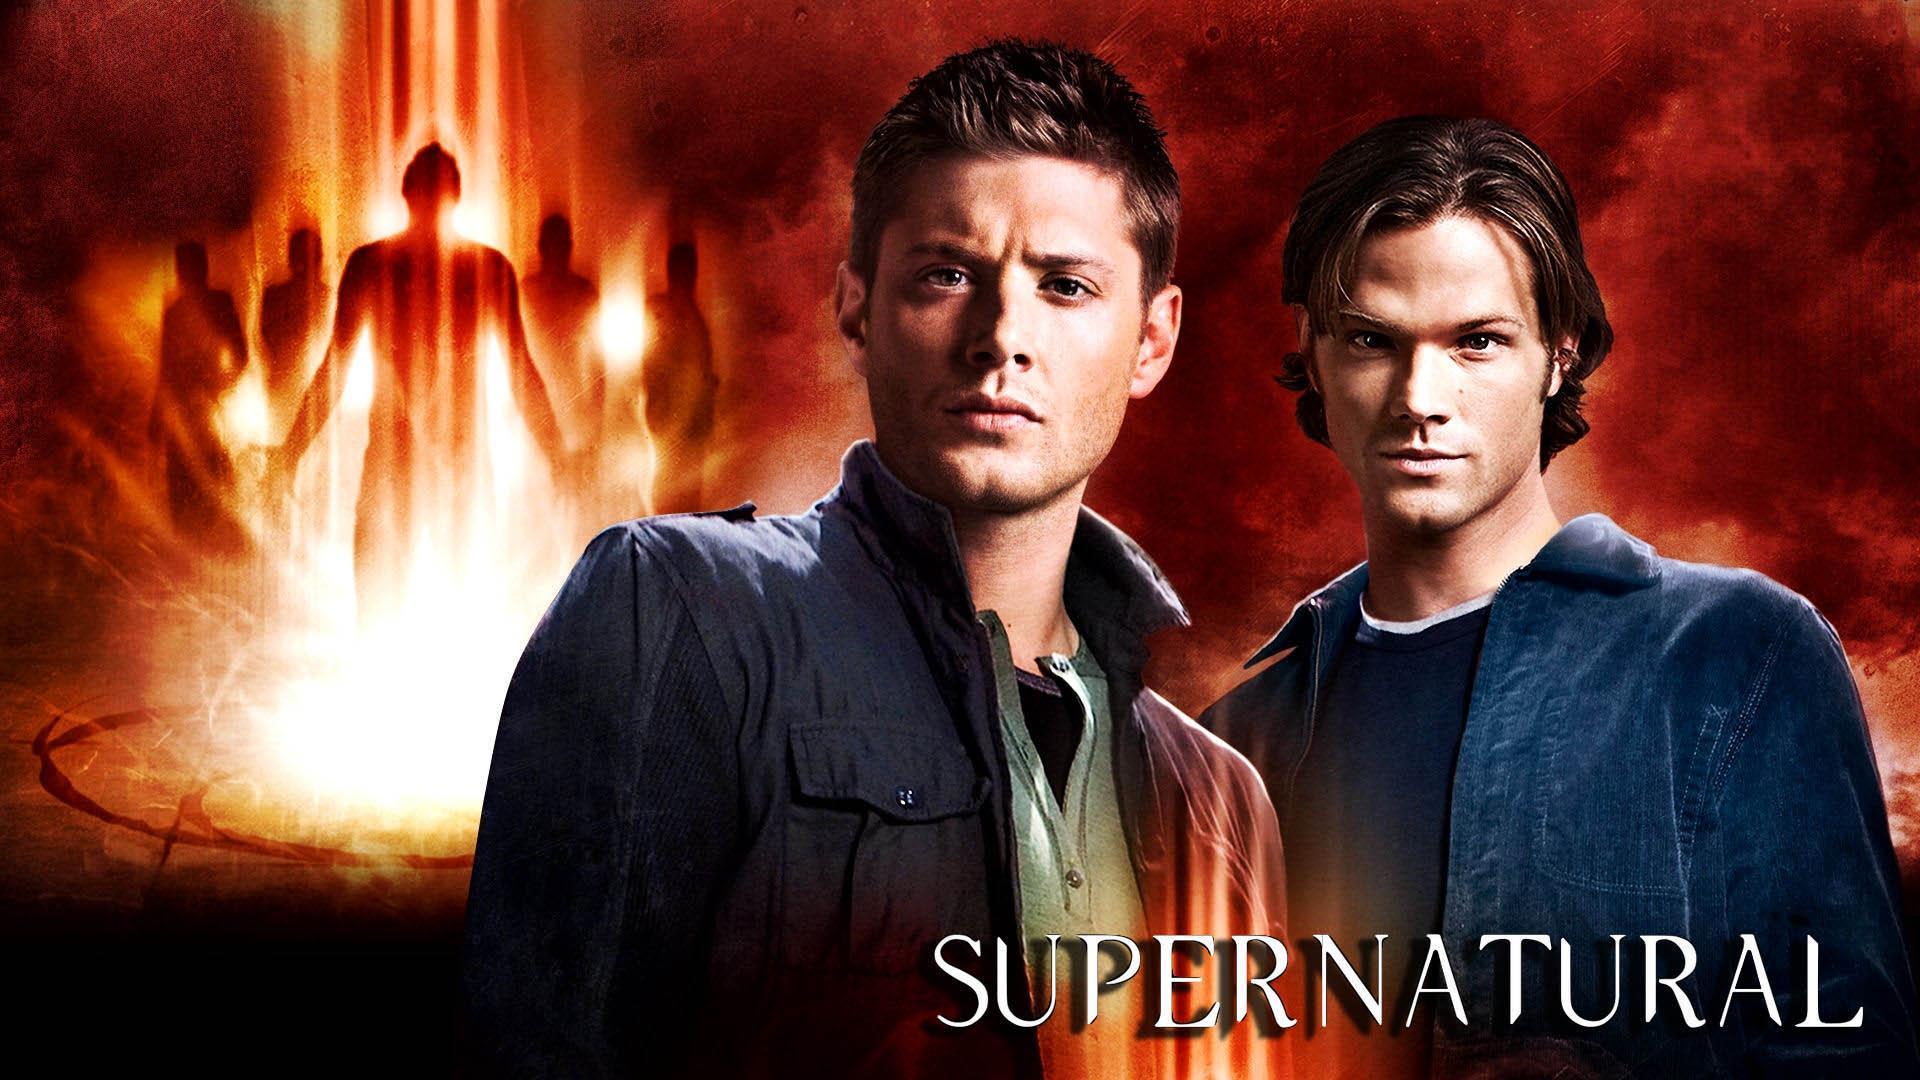 image For > Supernatural Season 5 Wallpaper